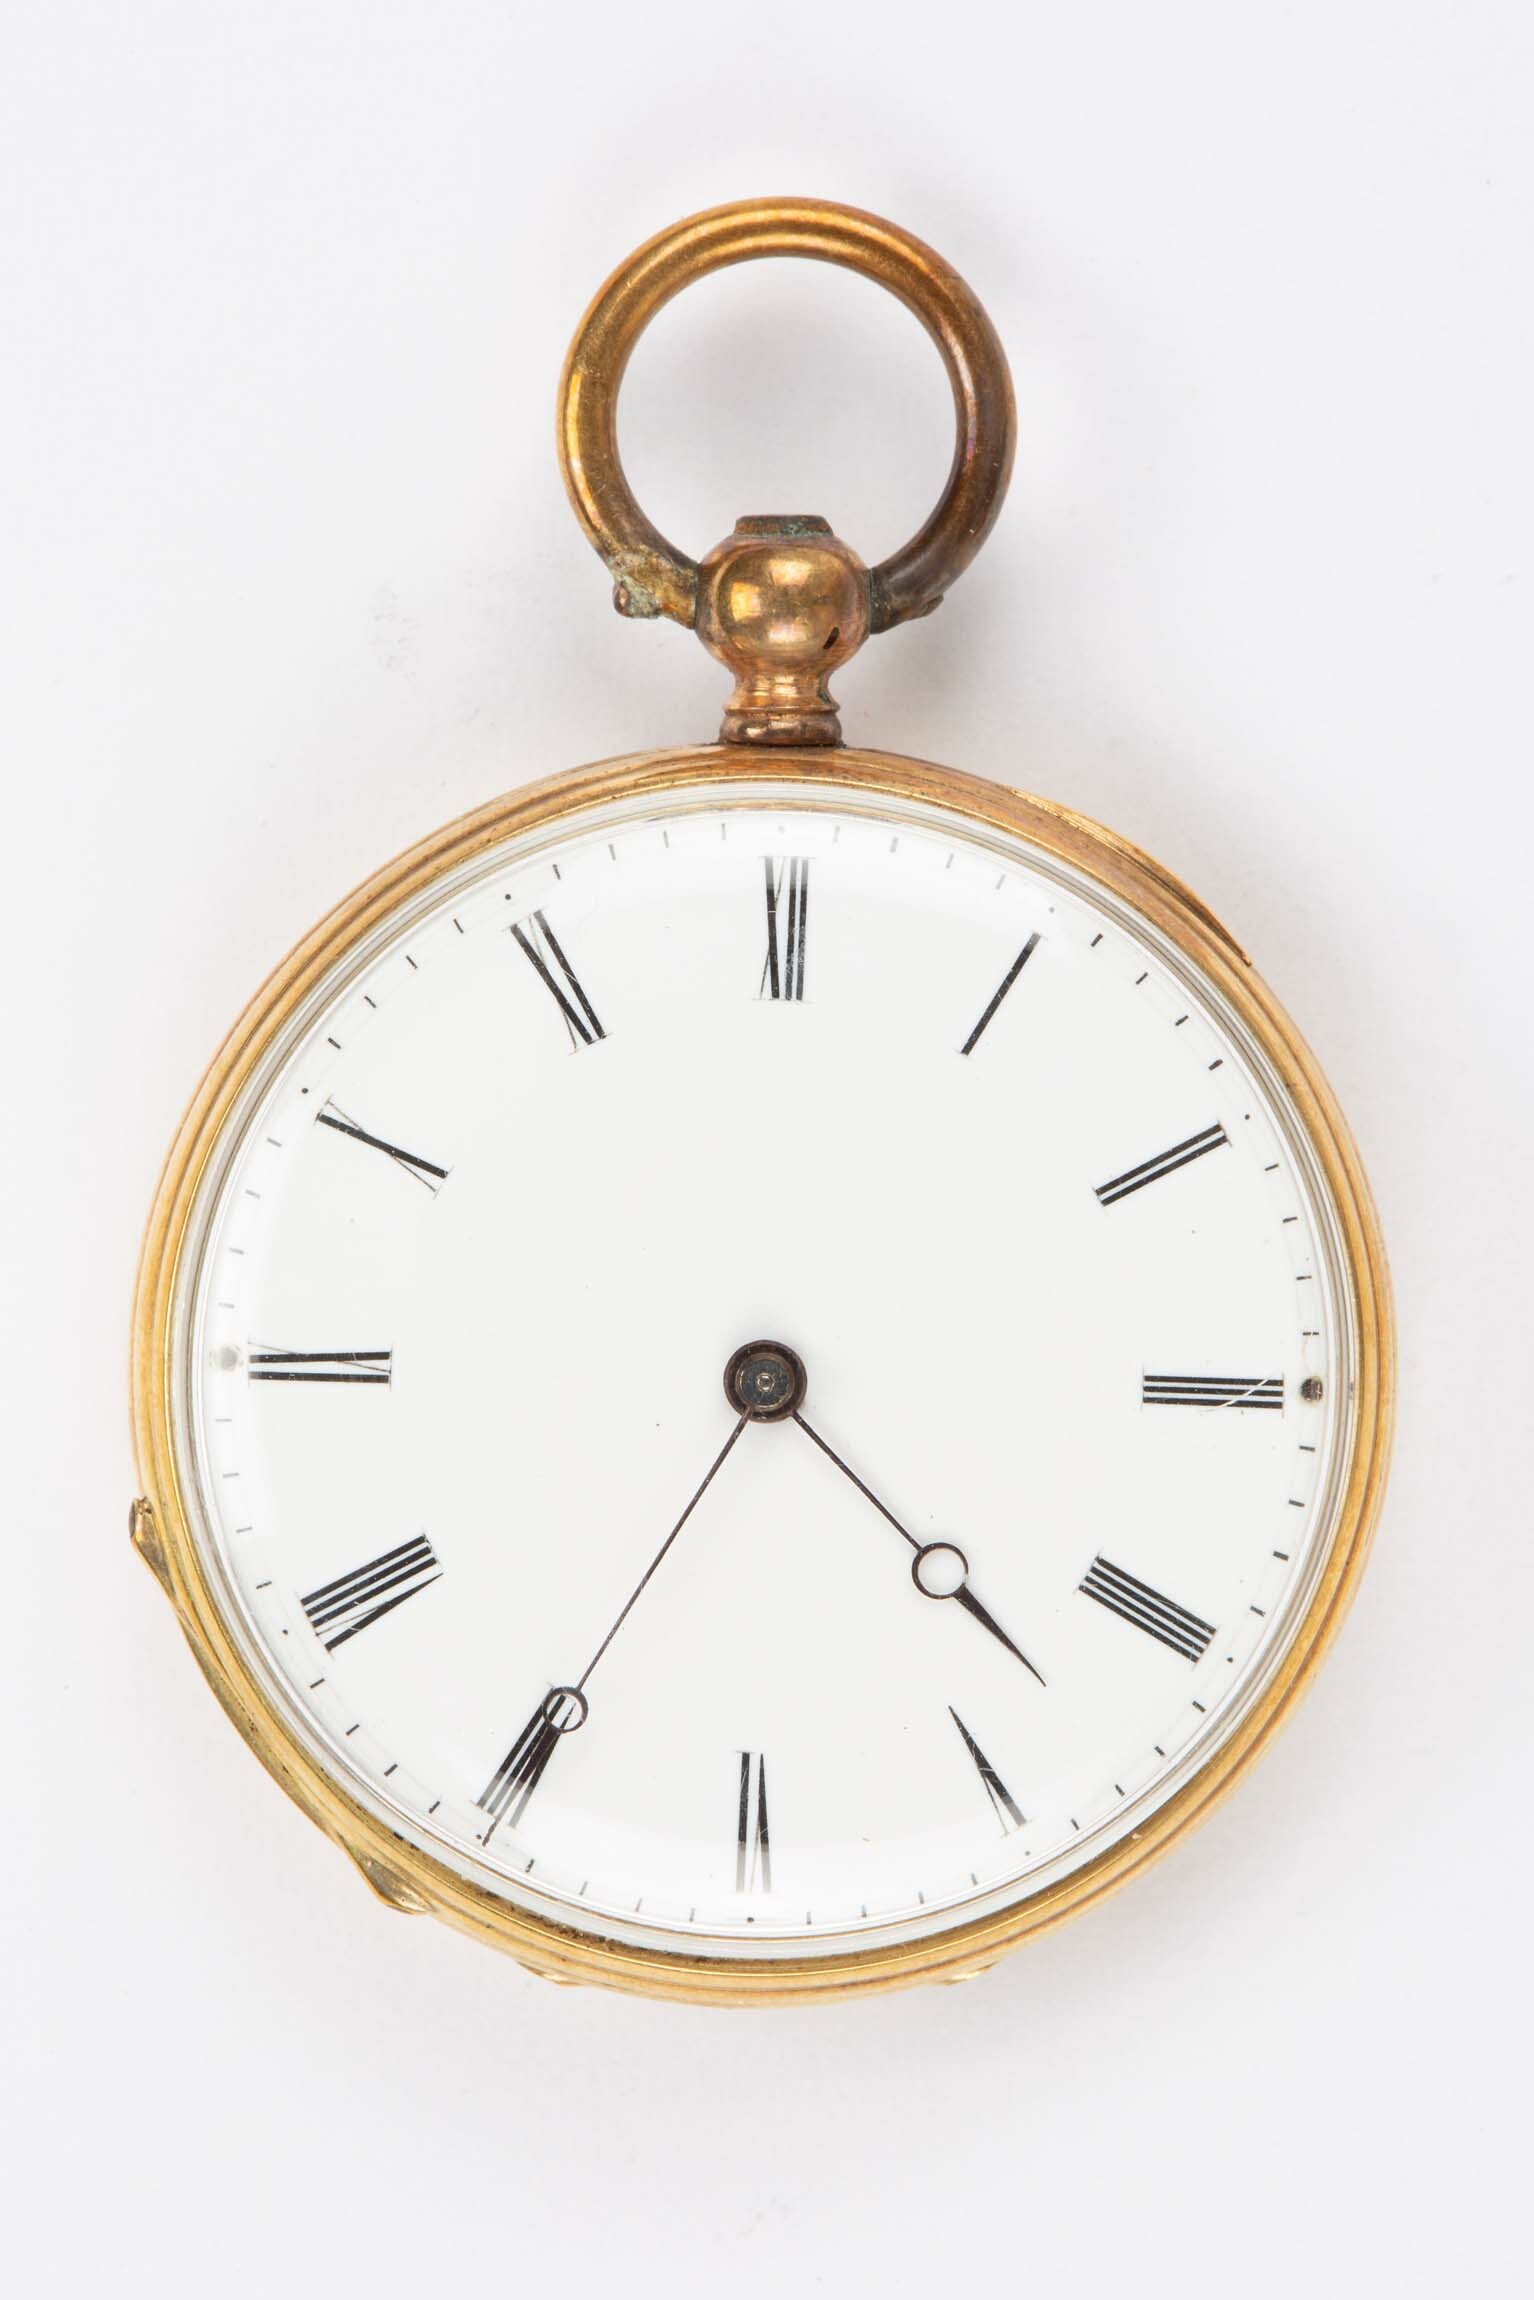 Taschenuhr, Neuchâtel, um 1850 (Deutsches Uhrenmuseum CC BY-SA)